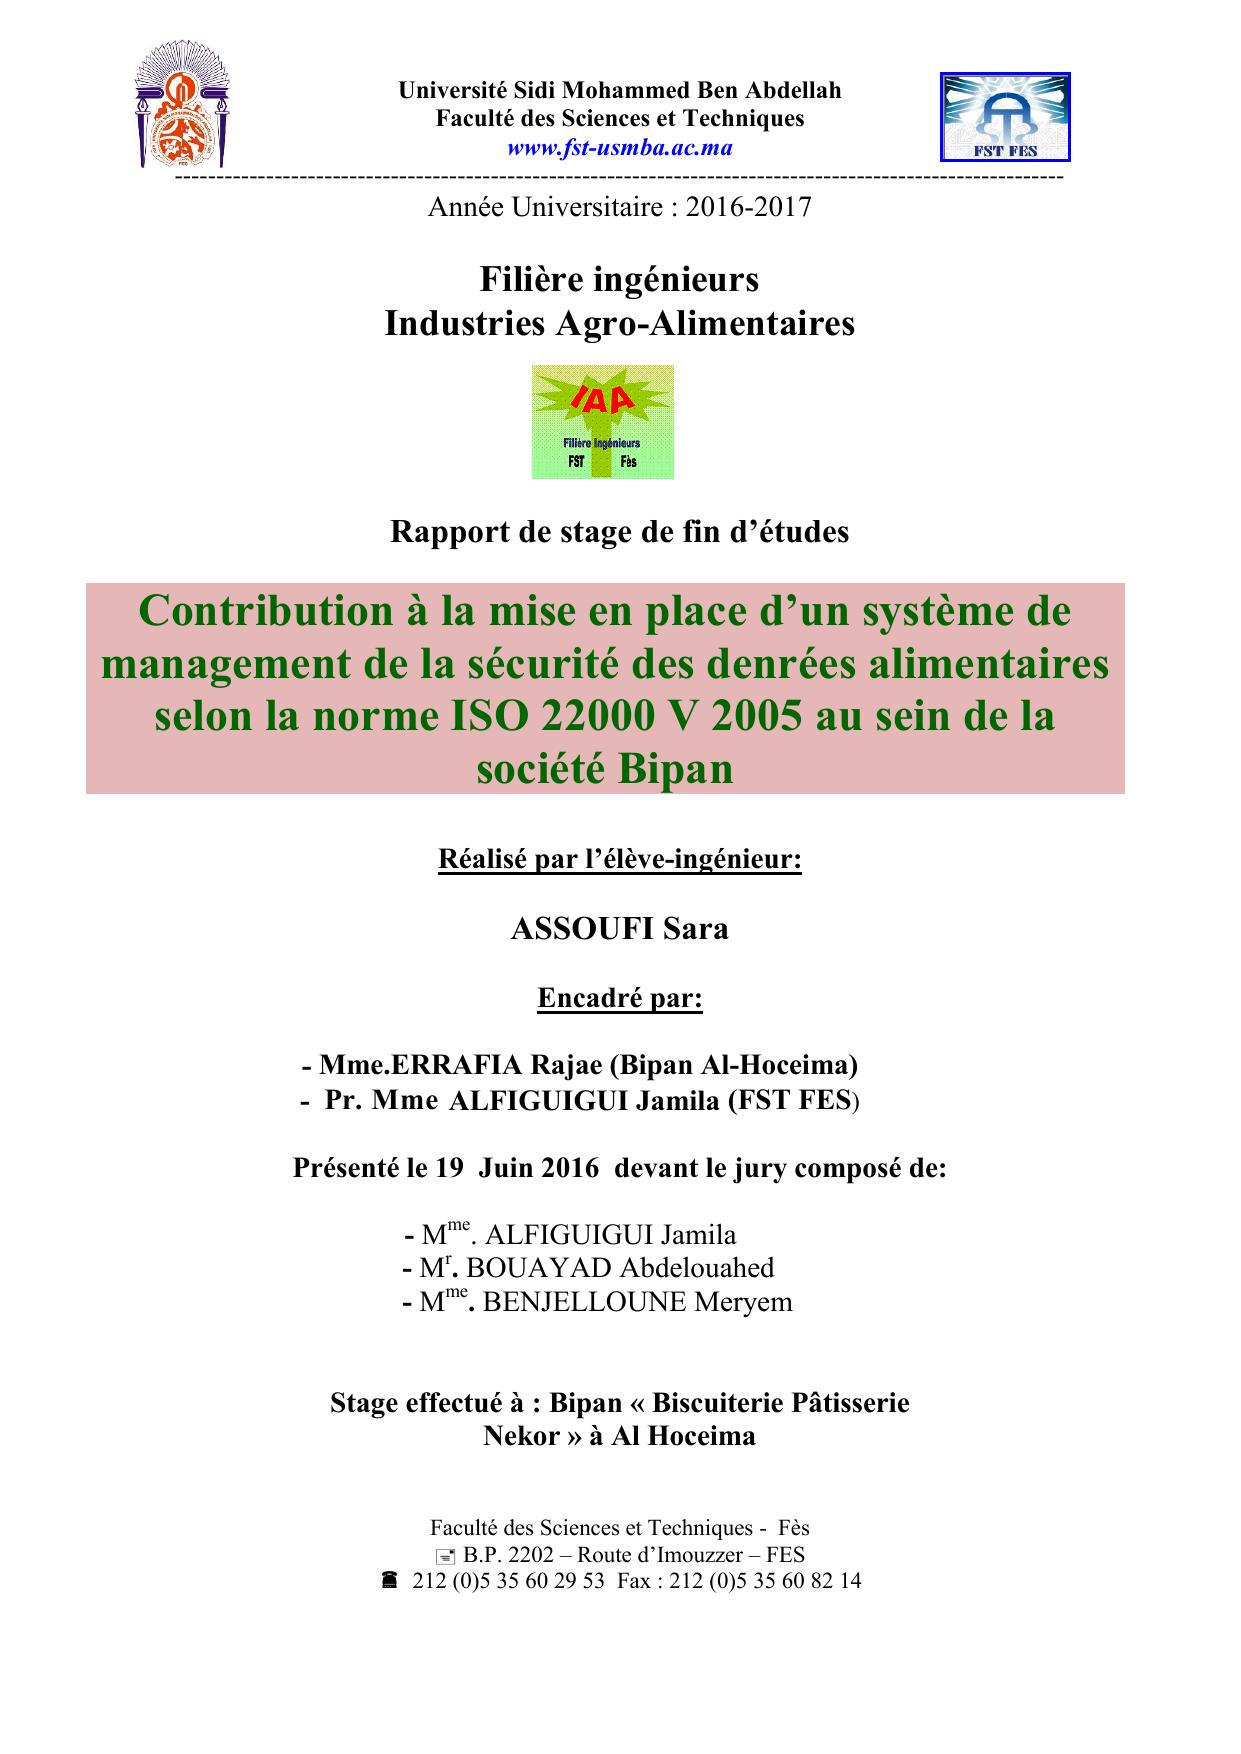 Contribution à la mise en place d’un système de management de la sécurité des denrées alimentaires selon la norme ISO 22000 V 2005 au sein de la société Bipan